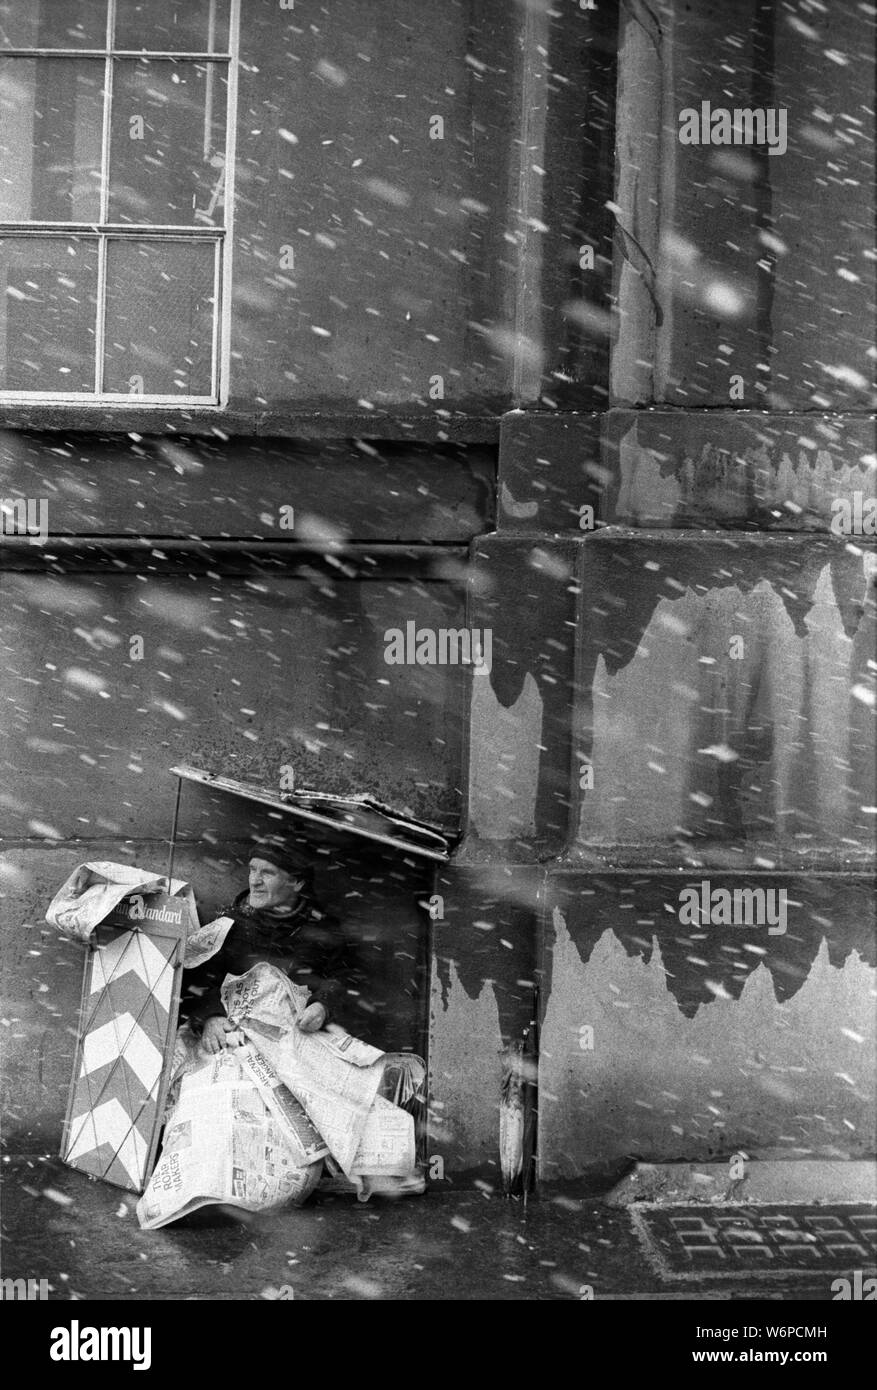 Journal London Evening Standard 1970 vendeur de rue de l'abri couvert de neige jusqu'à des journaux. Stamford Street SE1 Angleterre 70s Uk HOMER SYKES Banque D'Images